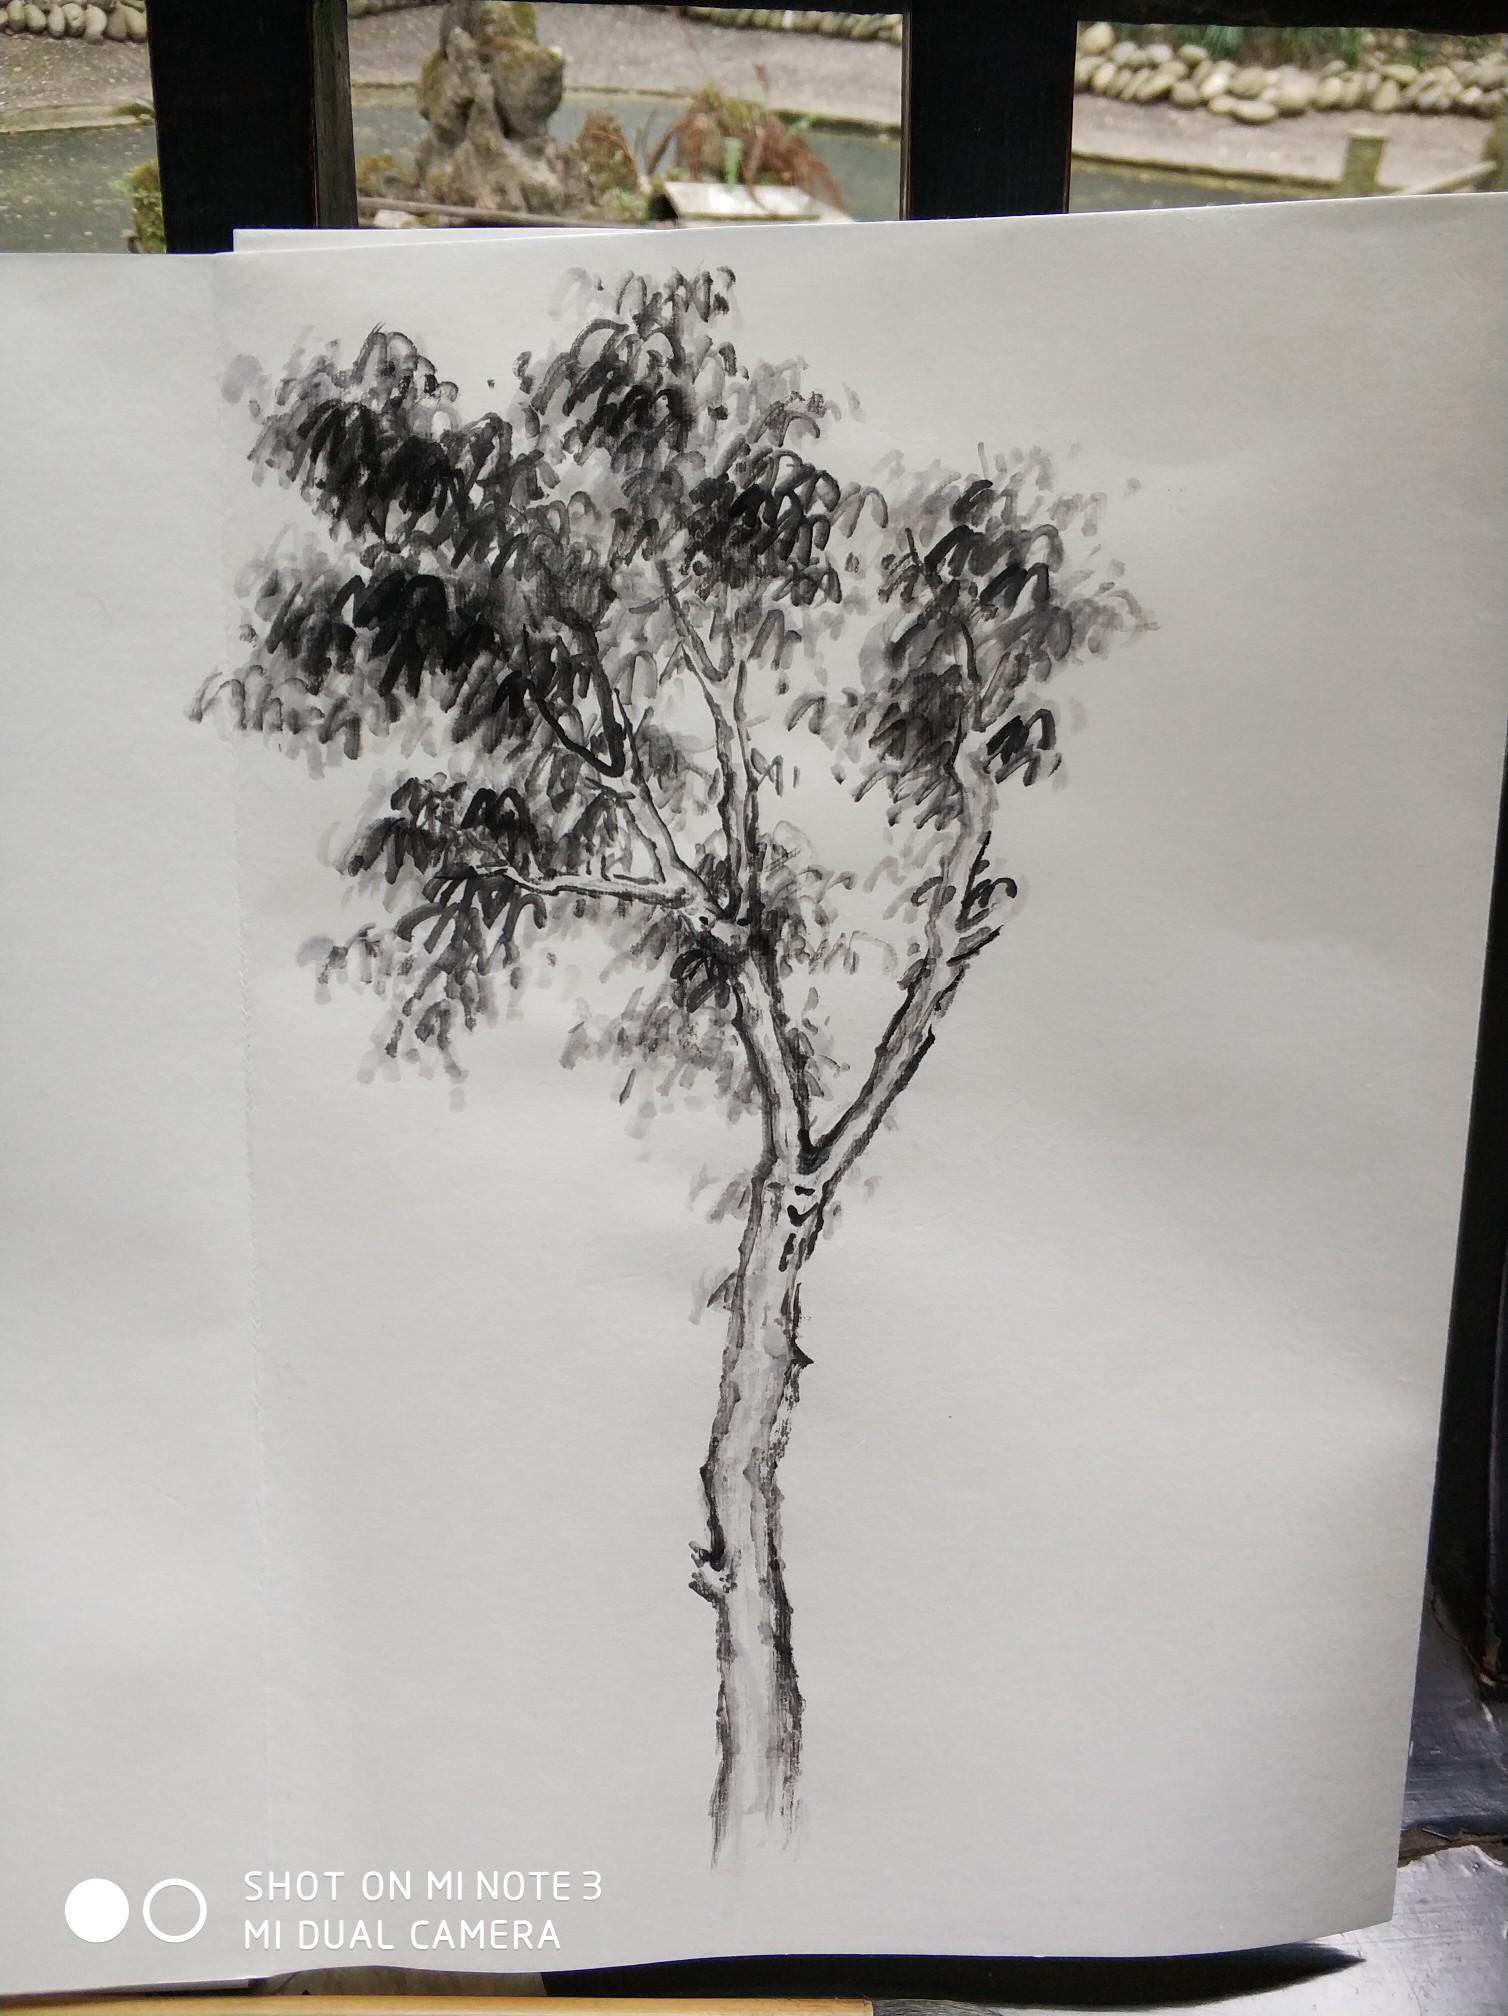 第一次国画写生杂树,学会了写生需要取舍,为以后自己创作积累素材